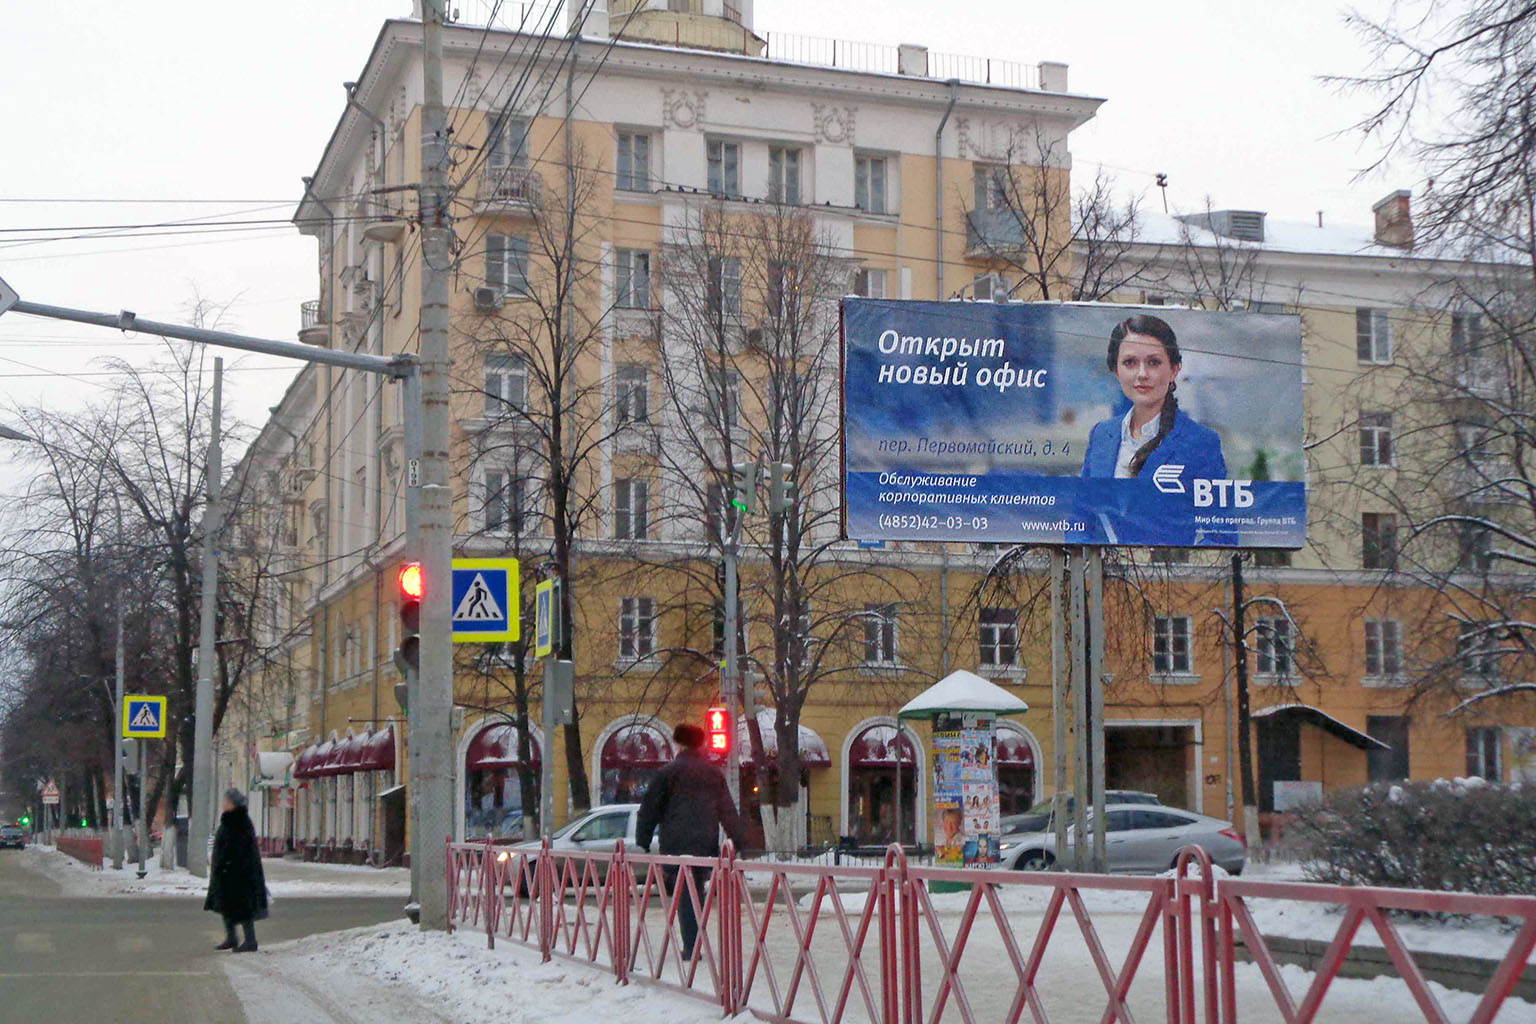 Открытие офиса «ВТБ» в г. Ярославле - билборд ул. Володарского